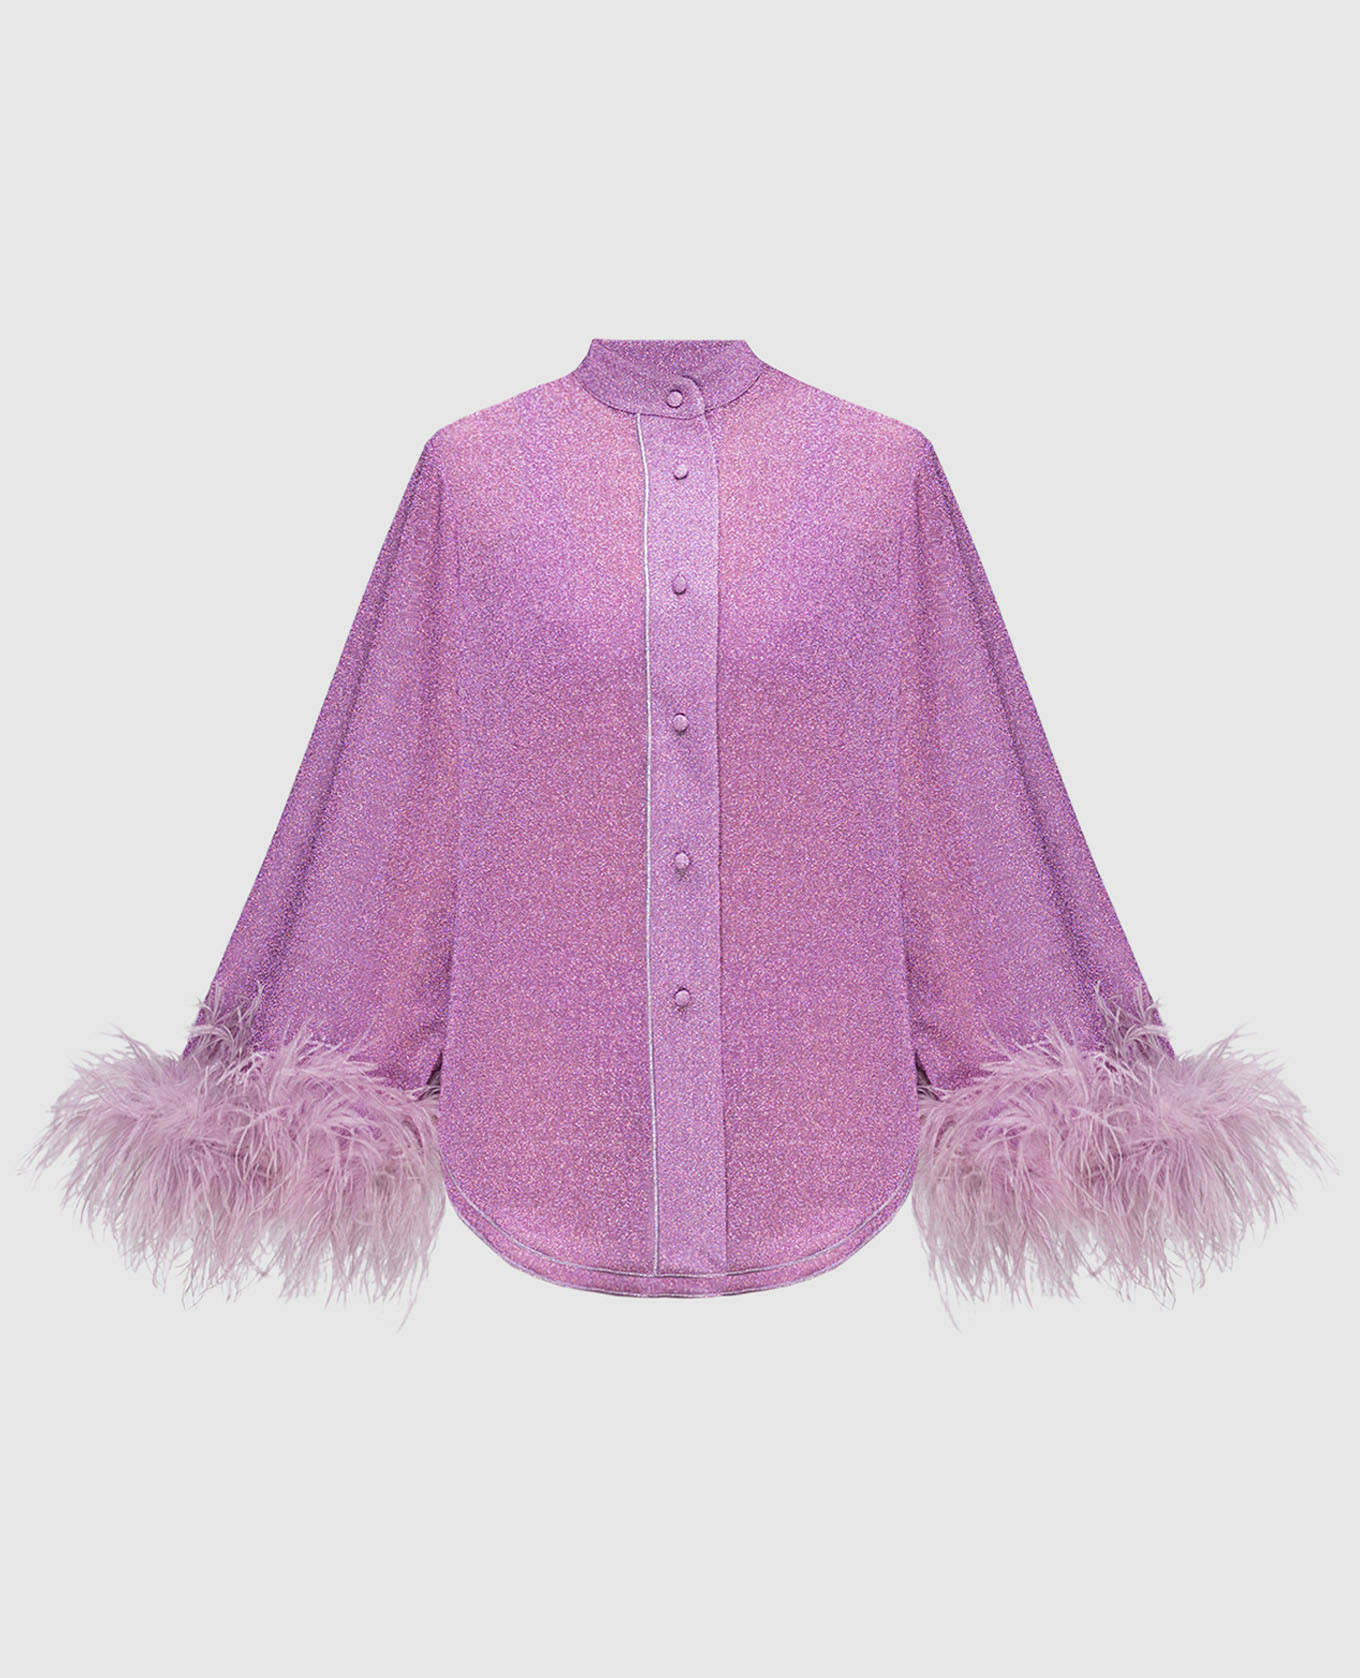 Фиолетовая блуза Lumiеre plumage с перьями страуса